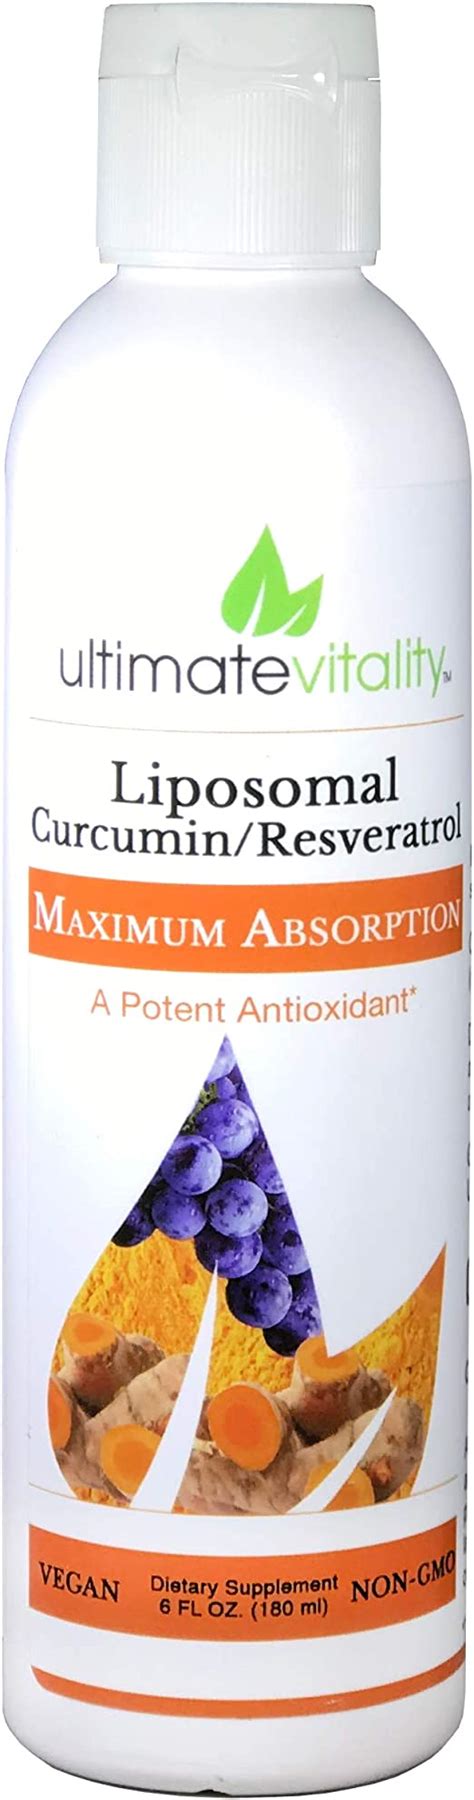 Amazon Com Liposomal Curcumin Liquid Liposomal Delivery System For